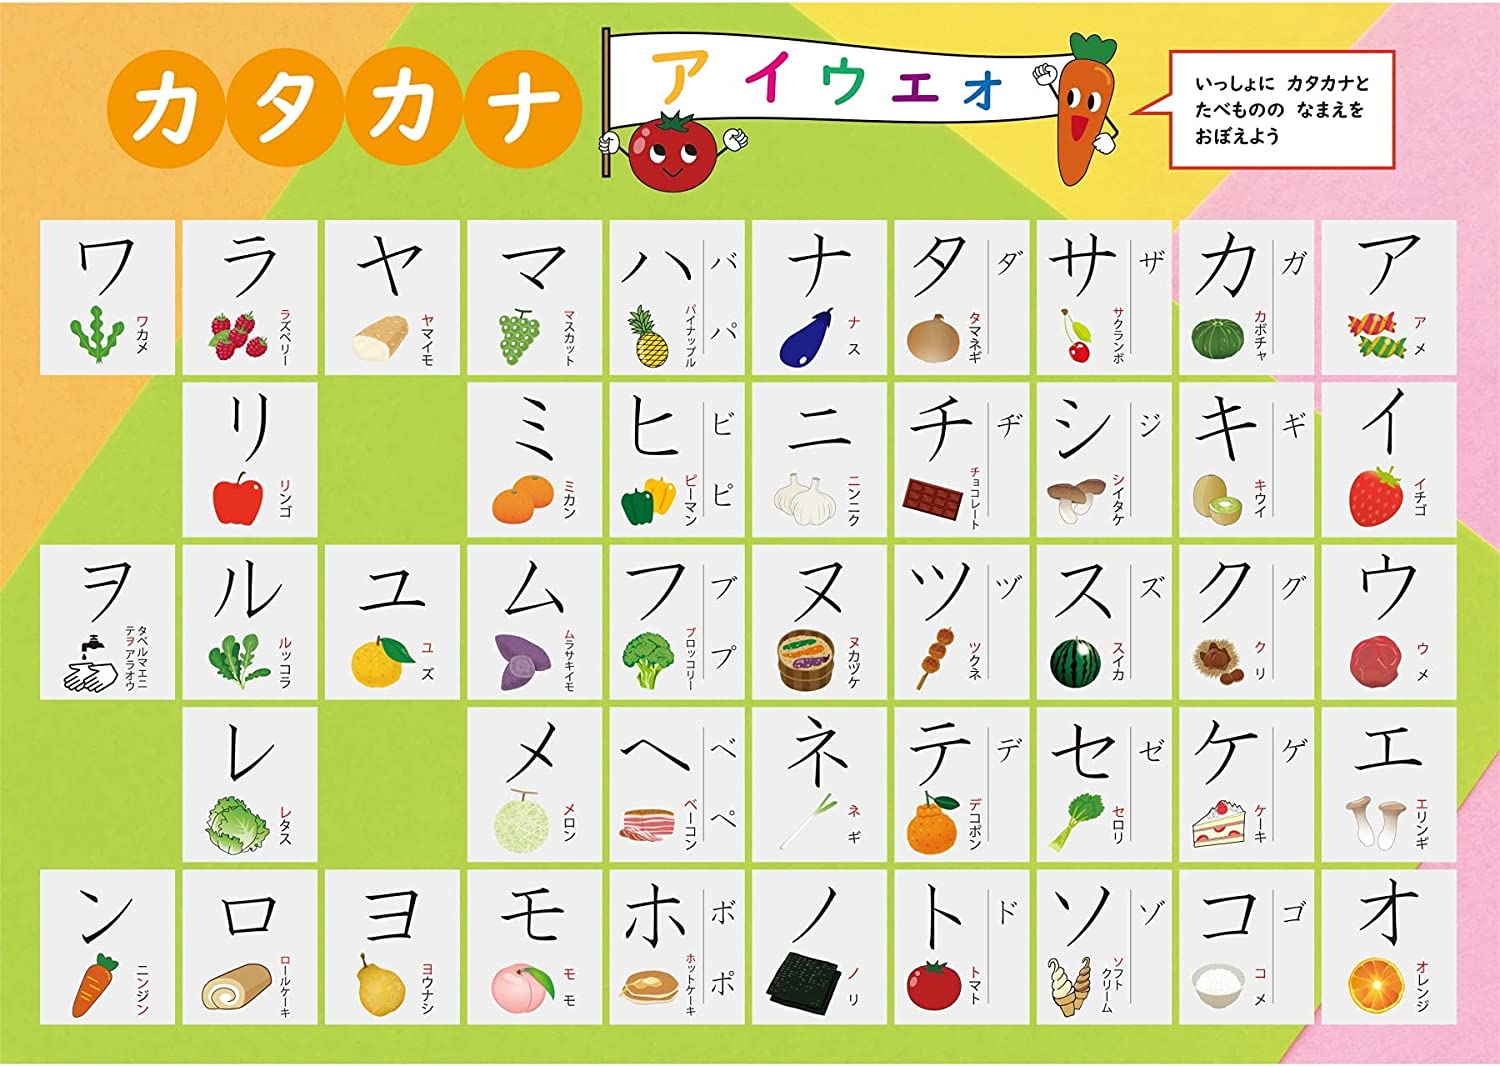 Bảng chữ cái Katakana tiếng Nhật đẹp nhất